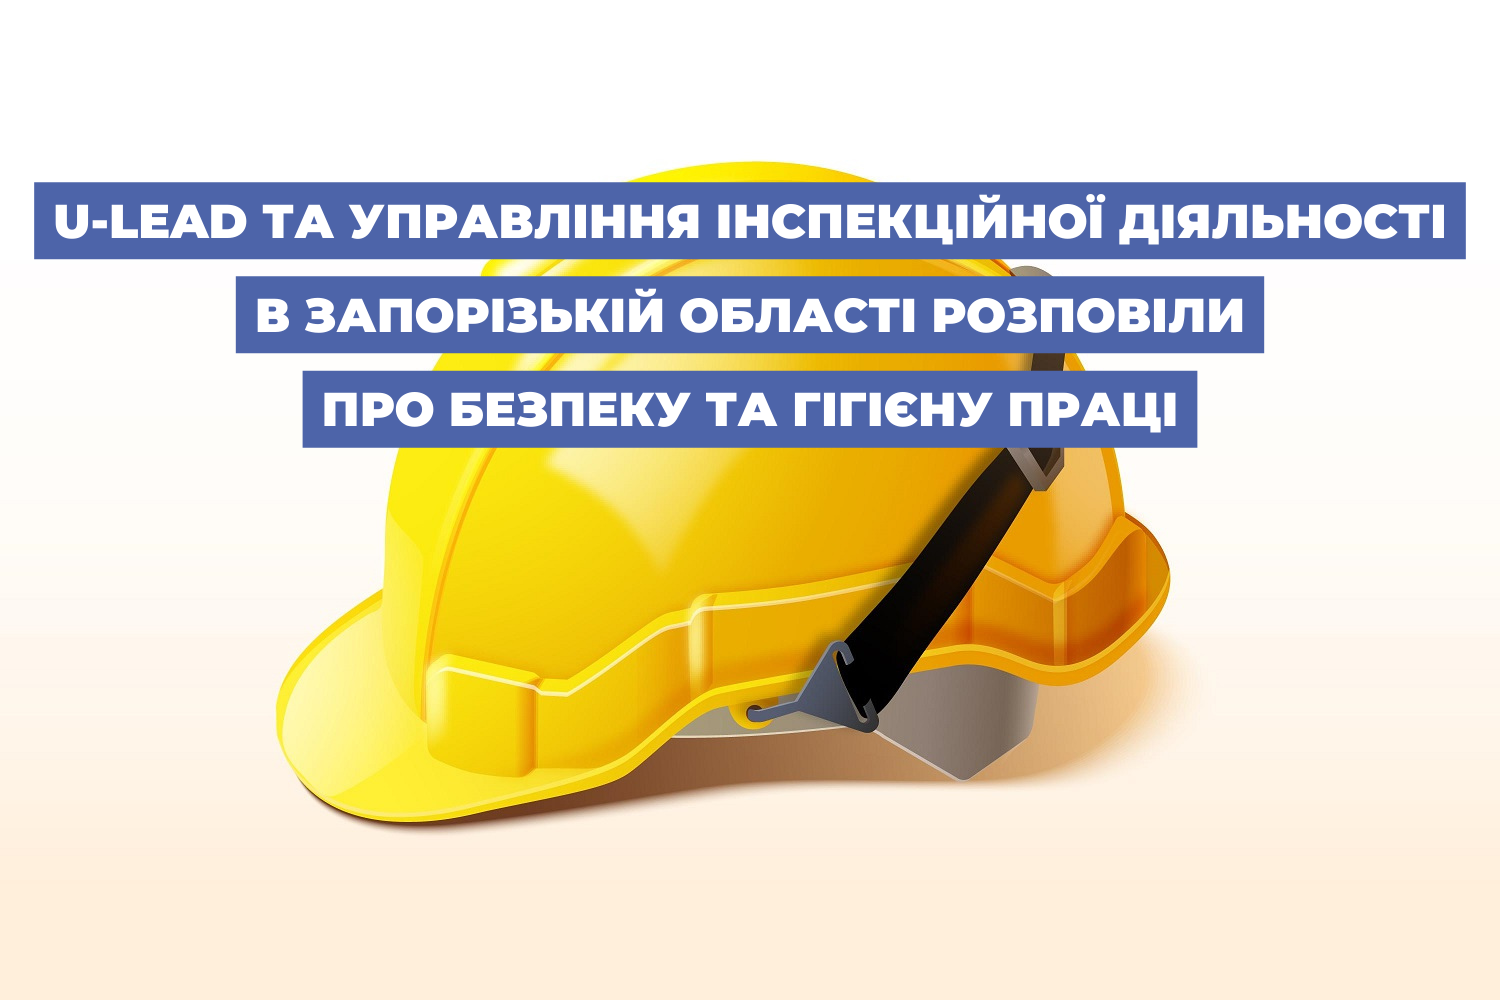 U-LEAD та управління інспекційної діяльності в Запорізькій області розповіли про безпеку та гігієну праці